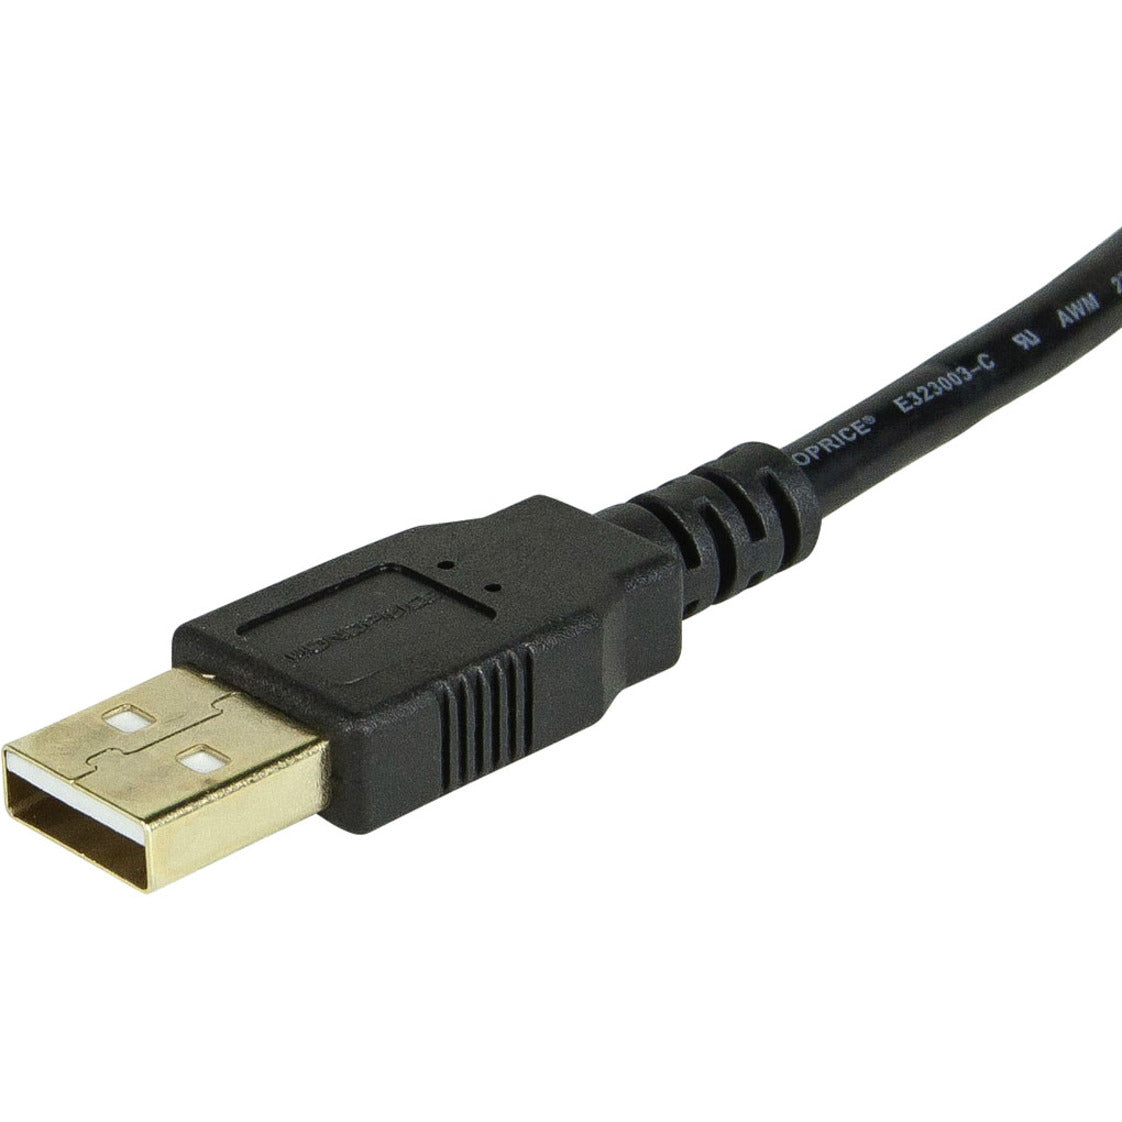 Monoprice 5433 6ft USB 2.0 A Macho a Hembra Cable de Extensión Libre de Corrosión Chapado en Oro